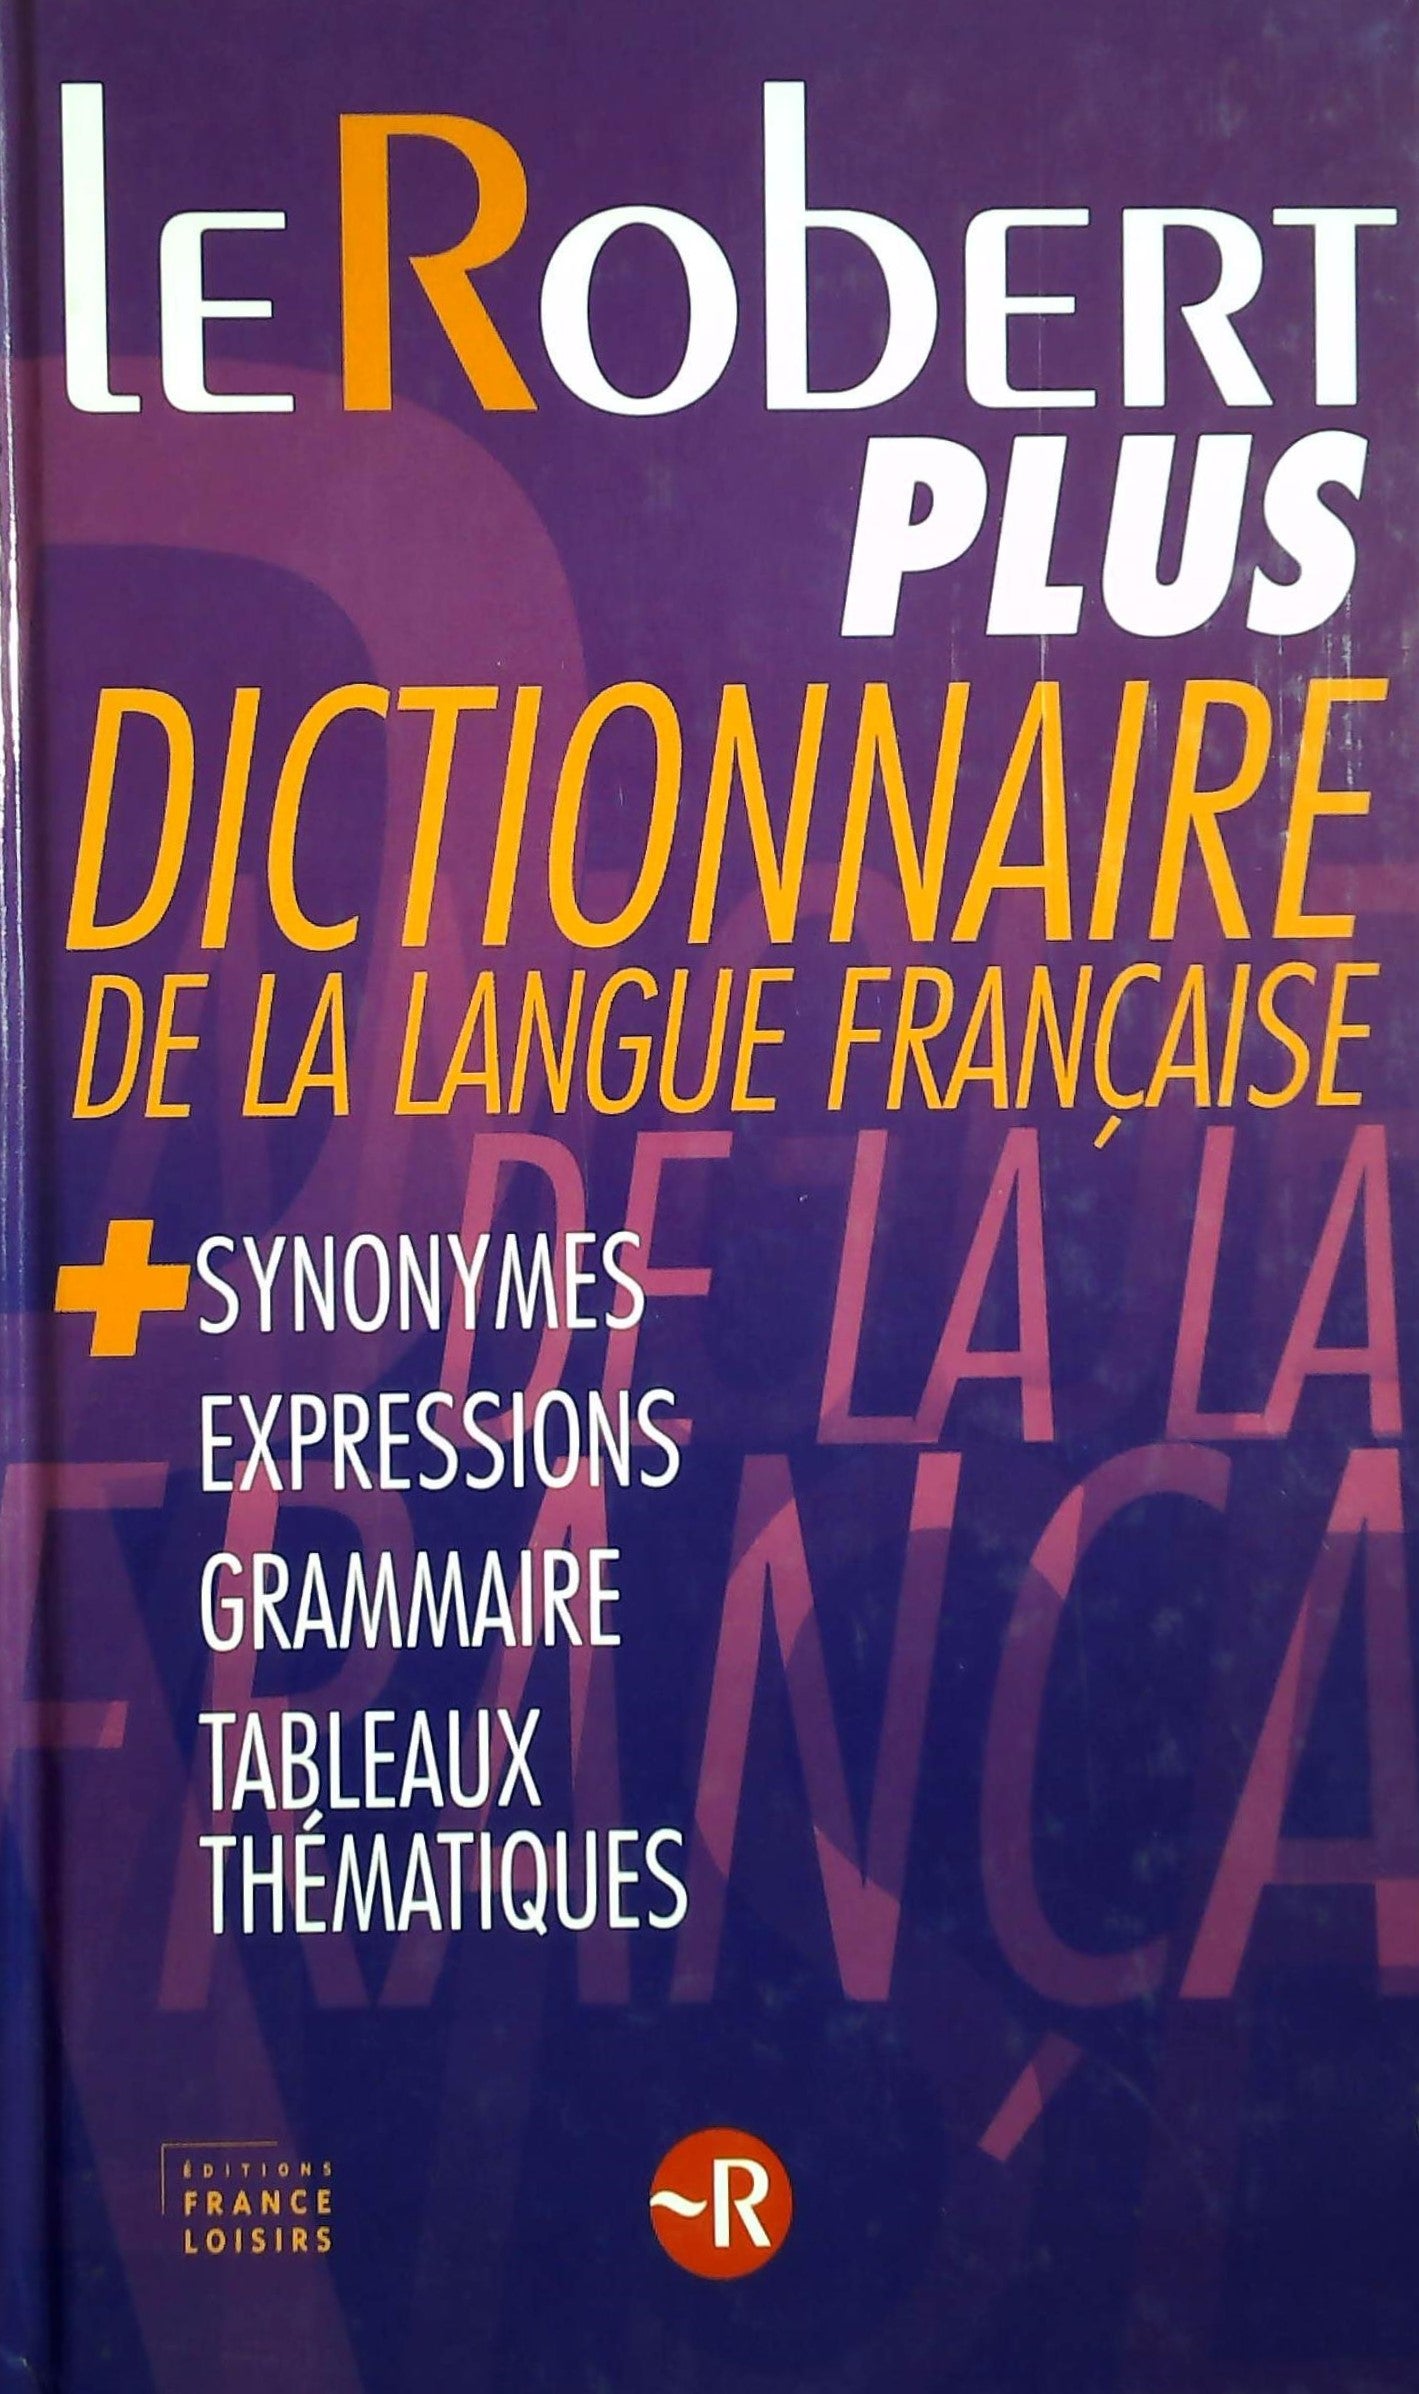 Livre ISBN 2298001618 Le robert plus, dictionnaire de la langue française + synonymes, expressions, grammaire, tableaux mathématiques